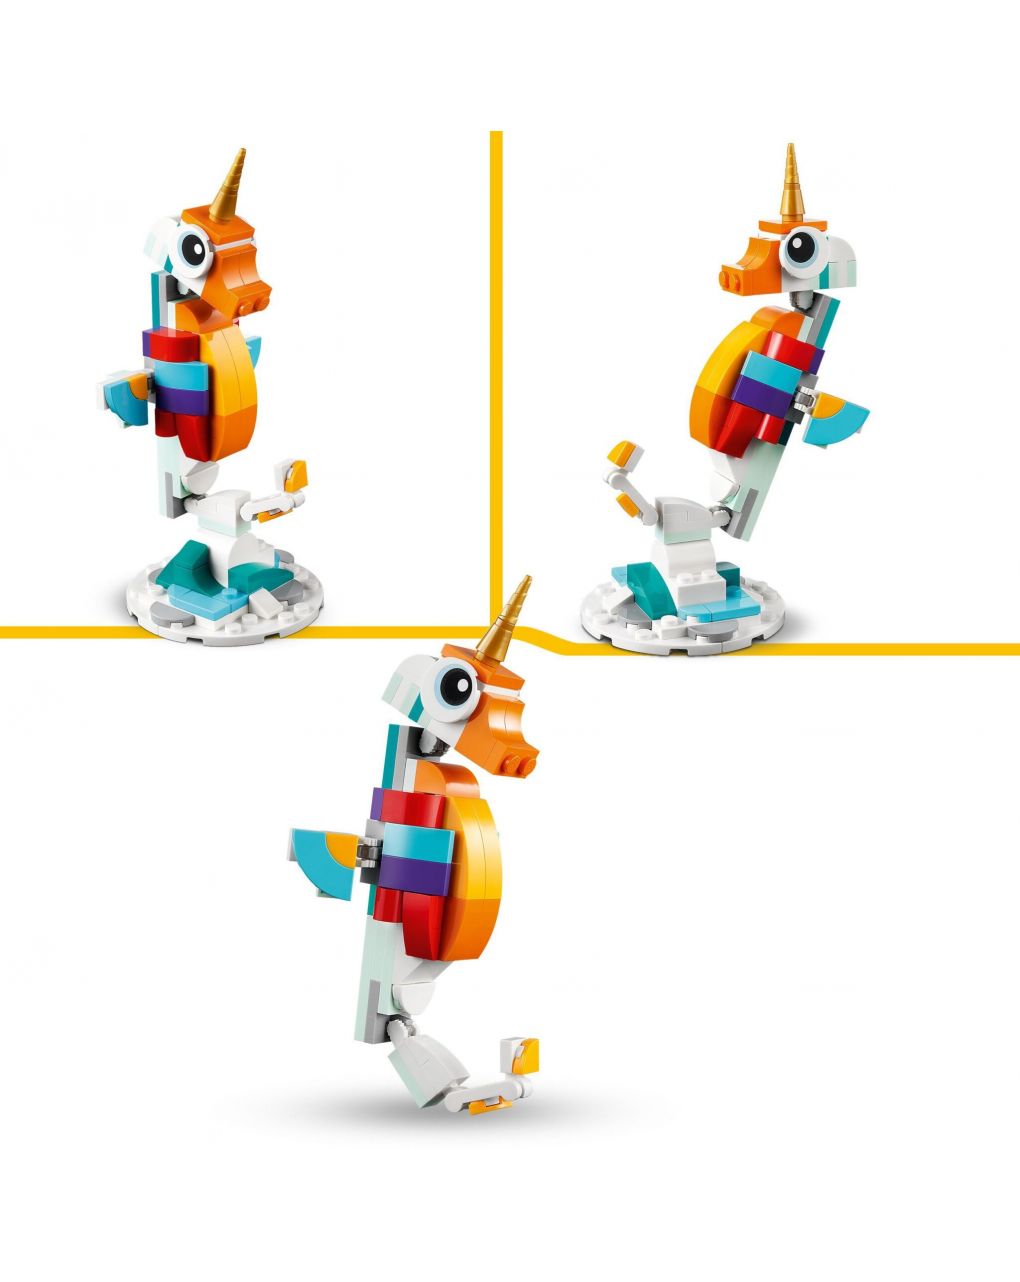 Unicorno magico con arcobaleno set 3 in 1 con animali giocattolo fantastici cavalluccio marino e pavone - lego creator - LEGO